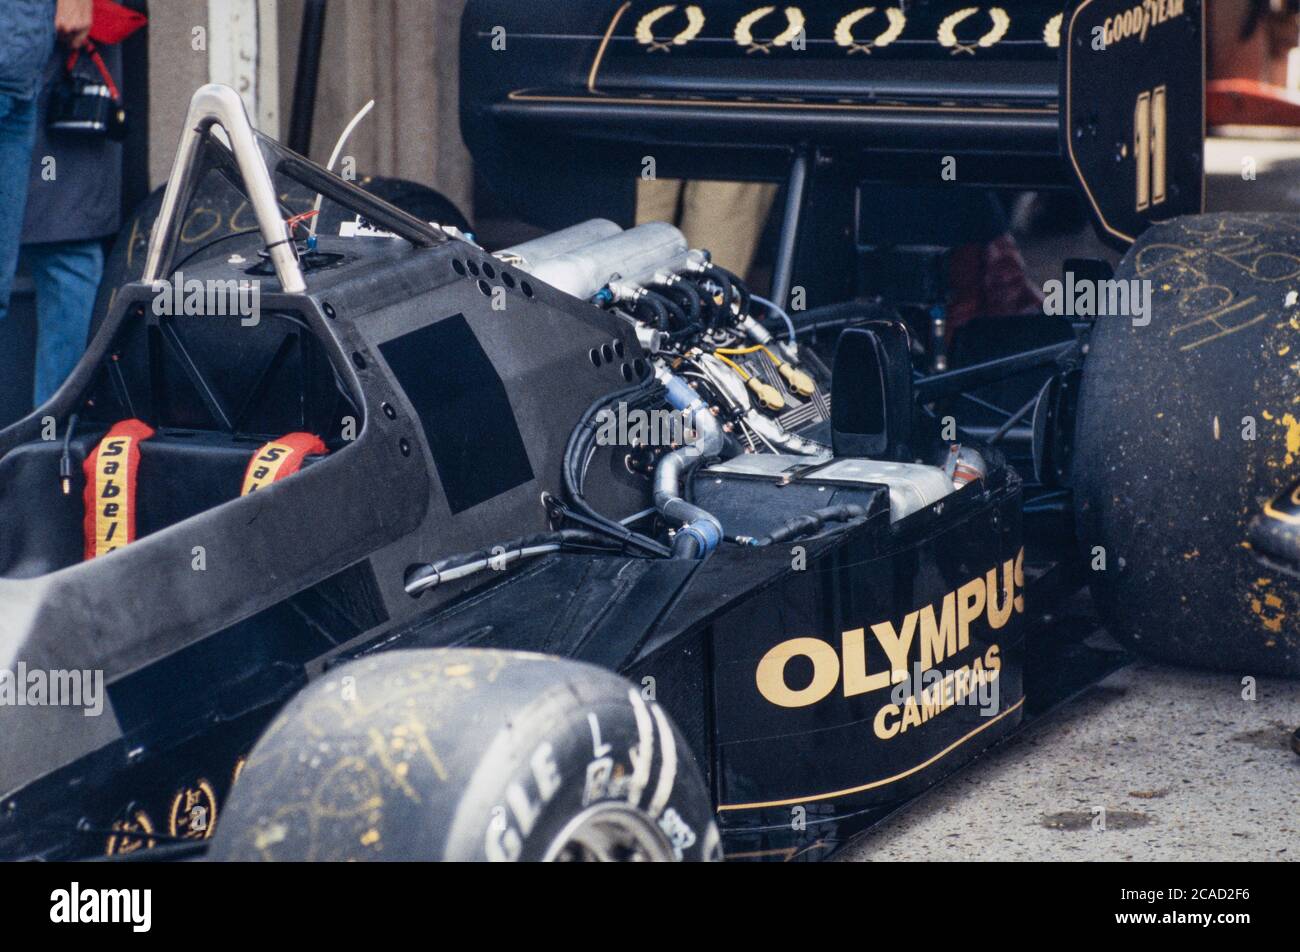 Archivbild: Britischer Grand Prix bei Brands Hatch 1985 ?. Lotus-Renault von Ayrton Senna. Stockfoto